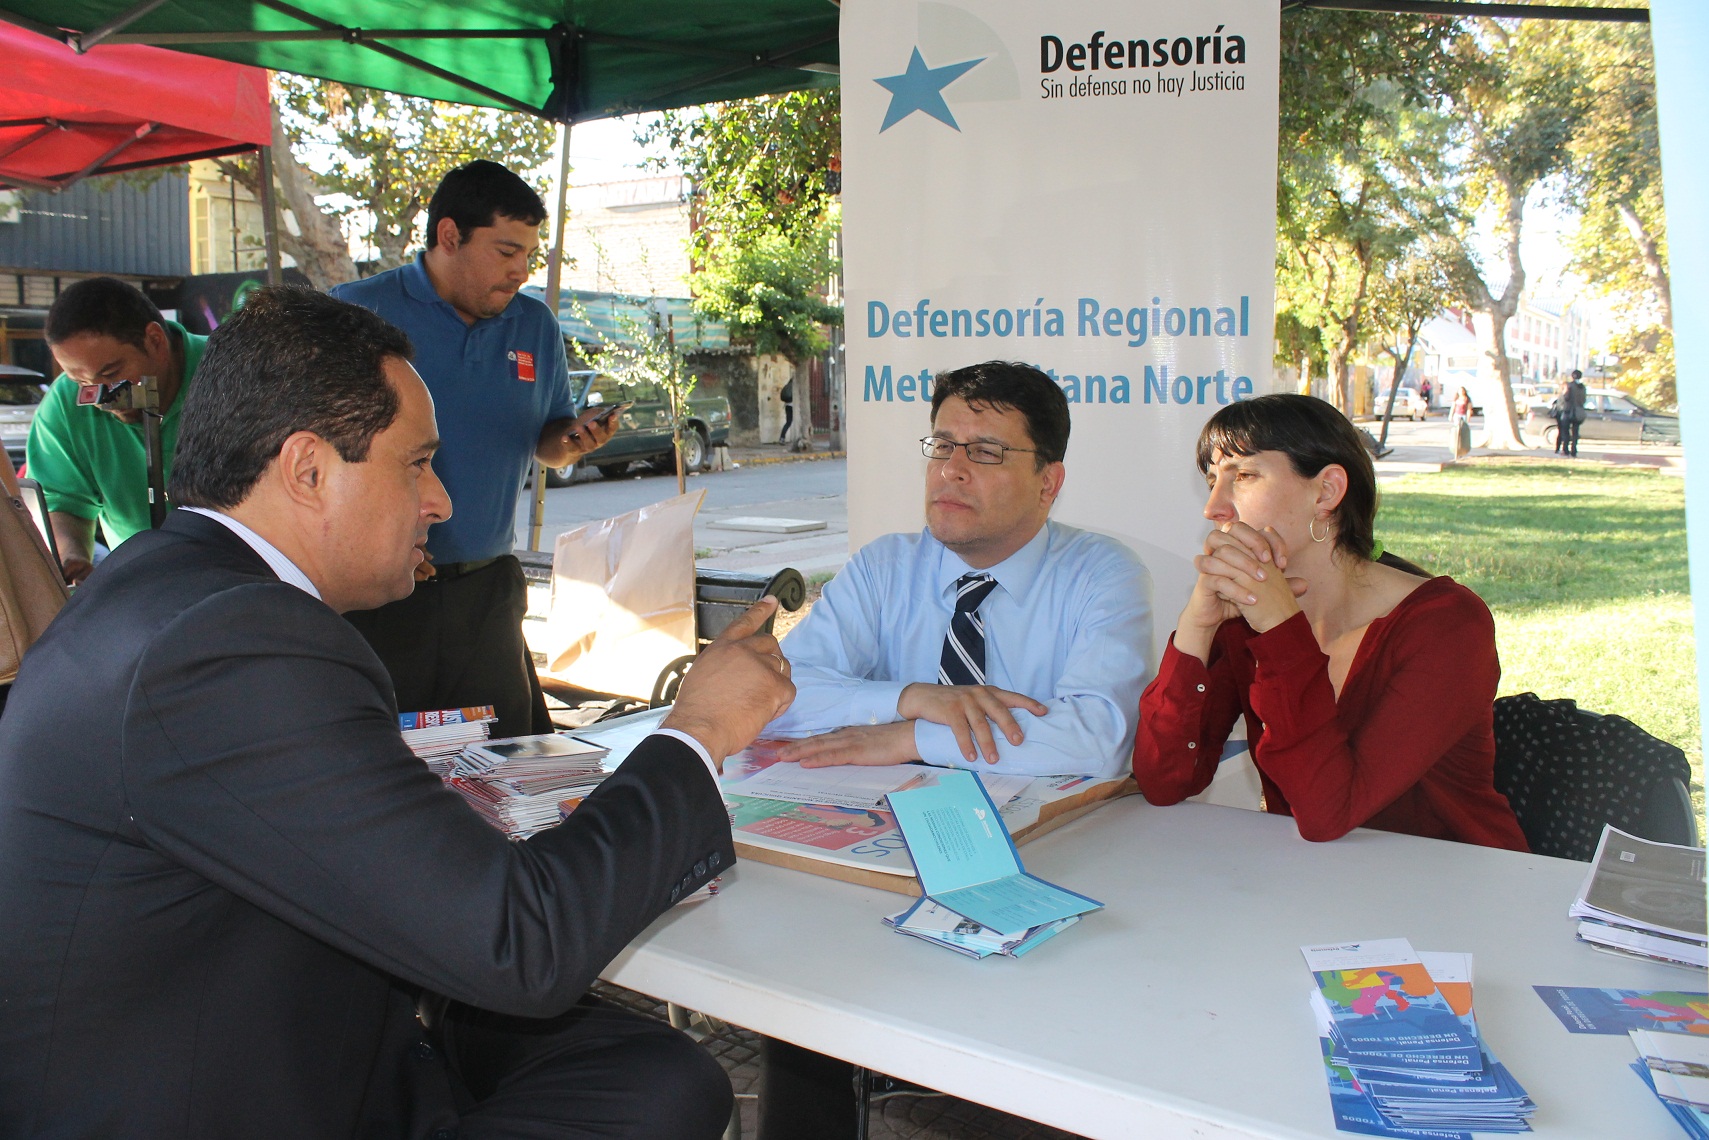 El cónsul peruano José Antonio Torrico conversó con Gabriel Carrión y Francisca Sellés en la plaza de justicia de migrantes.